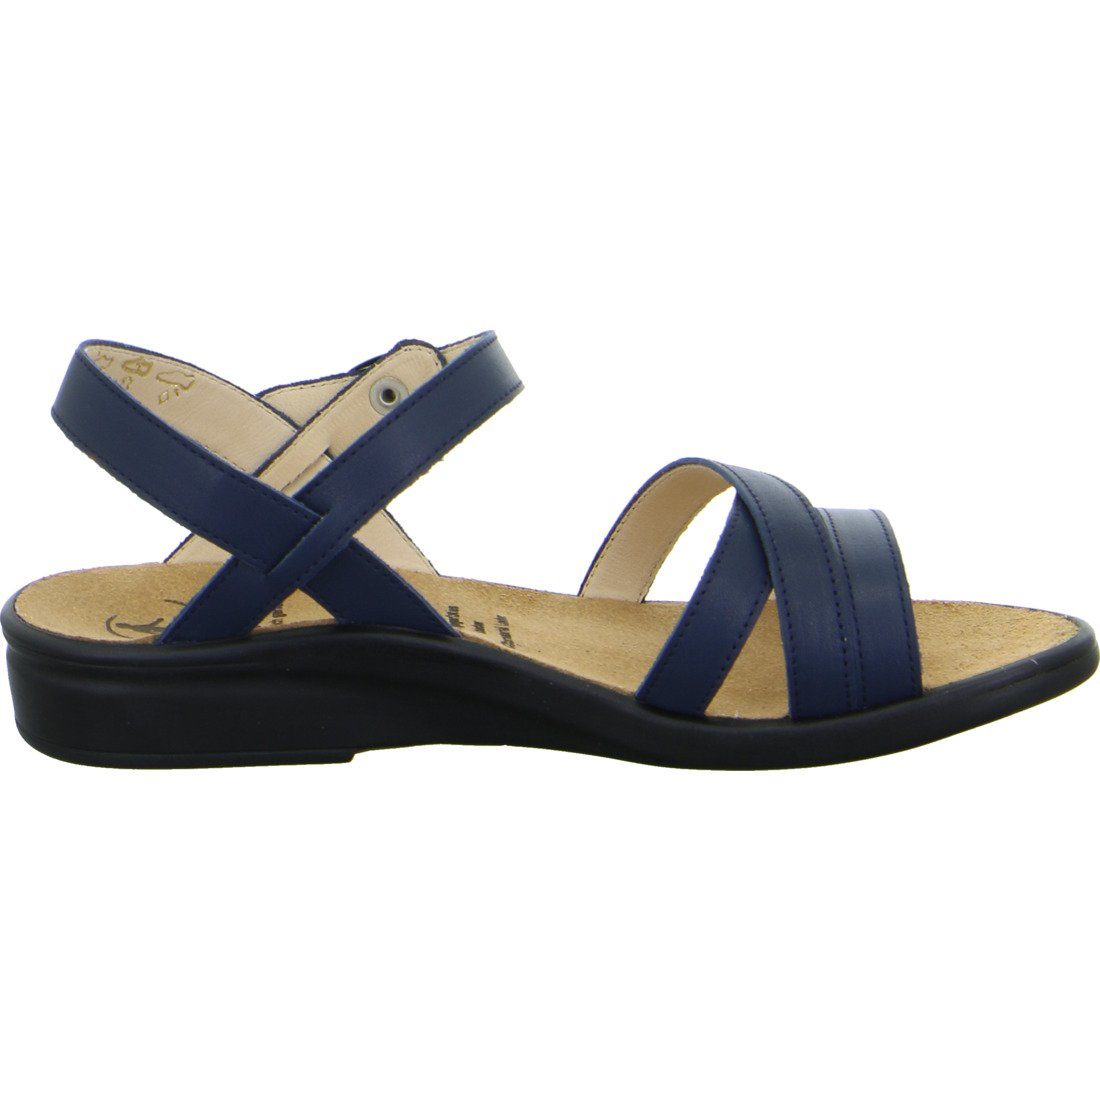 Ganter Ganter Schuhe, blau Sonnica Sandalette - Glattleder 048926 Sandalette